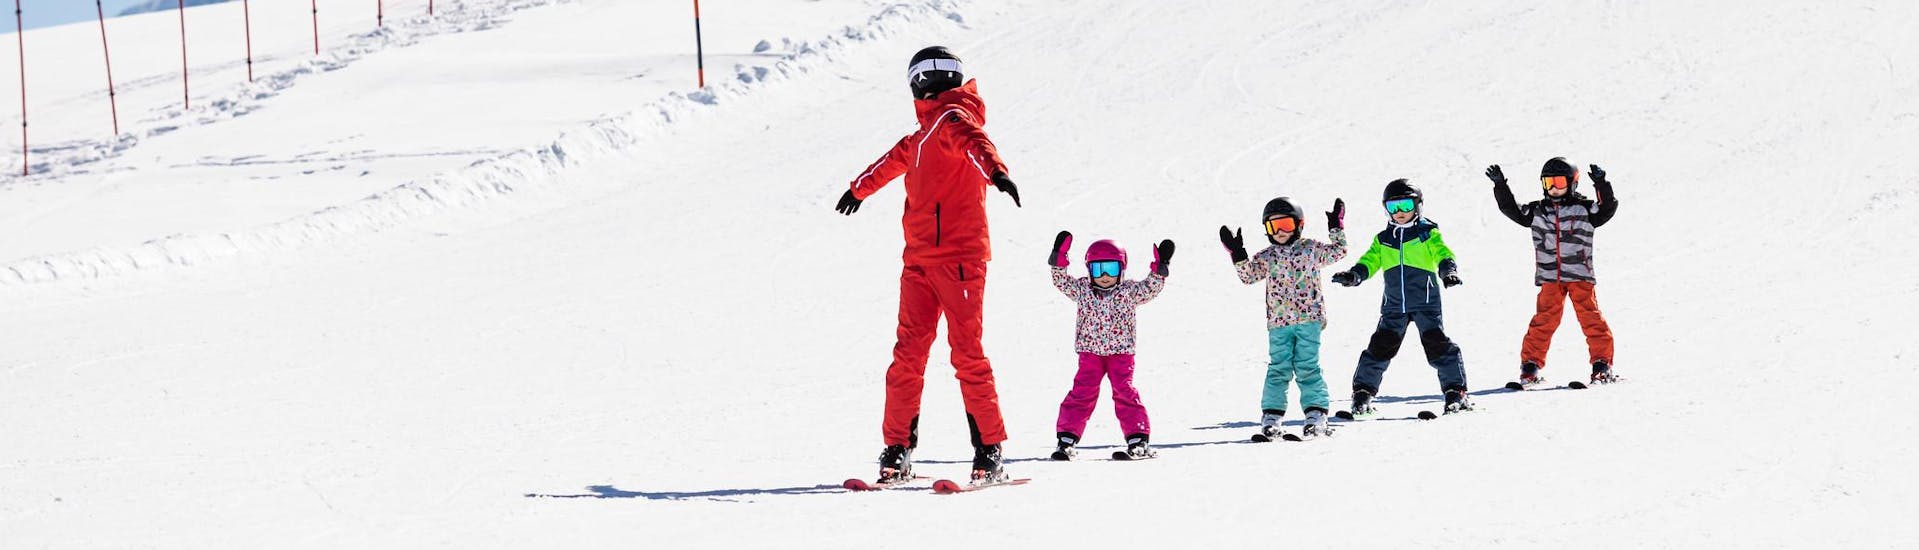 Moniteur de ski et enfants profitent d'une leçon de ski dans une école de ski près de Karlsruhe.